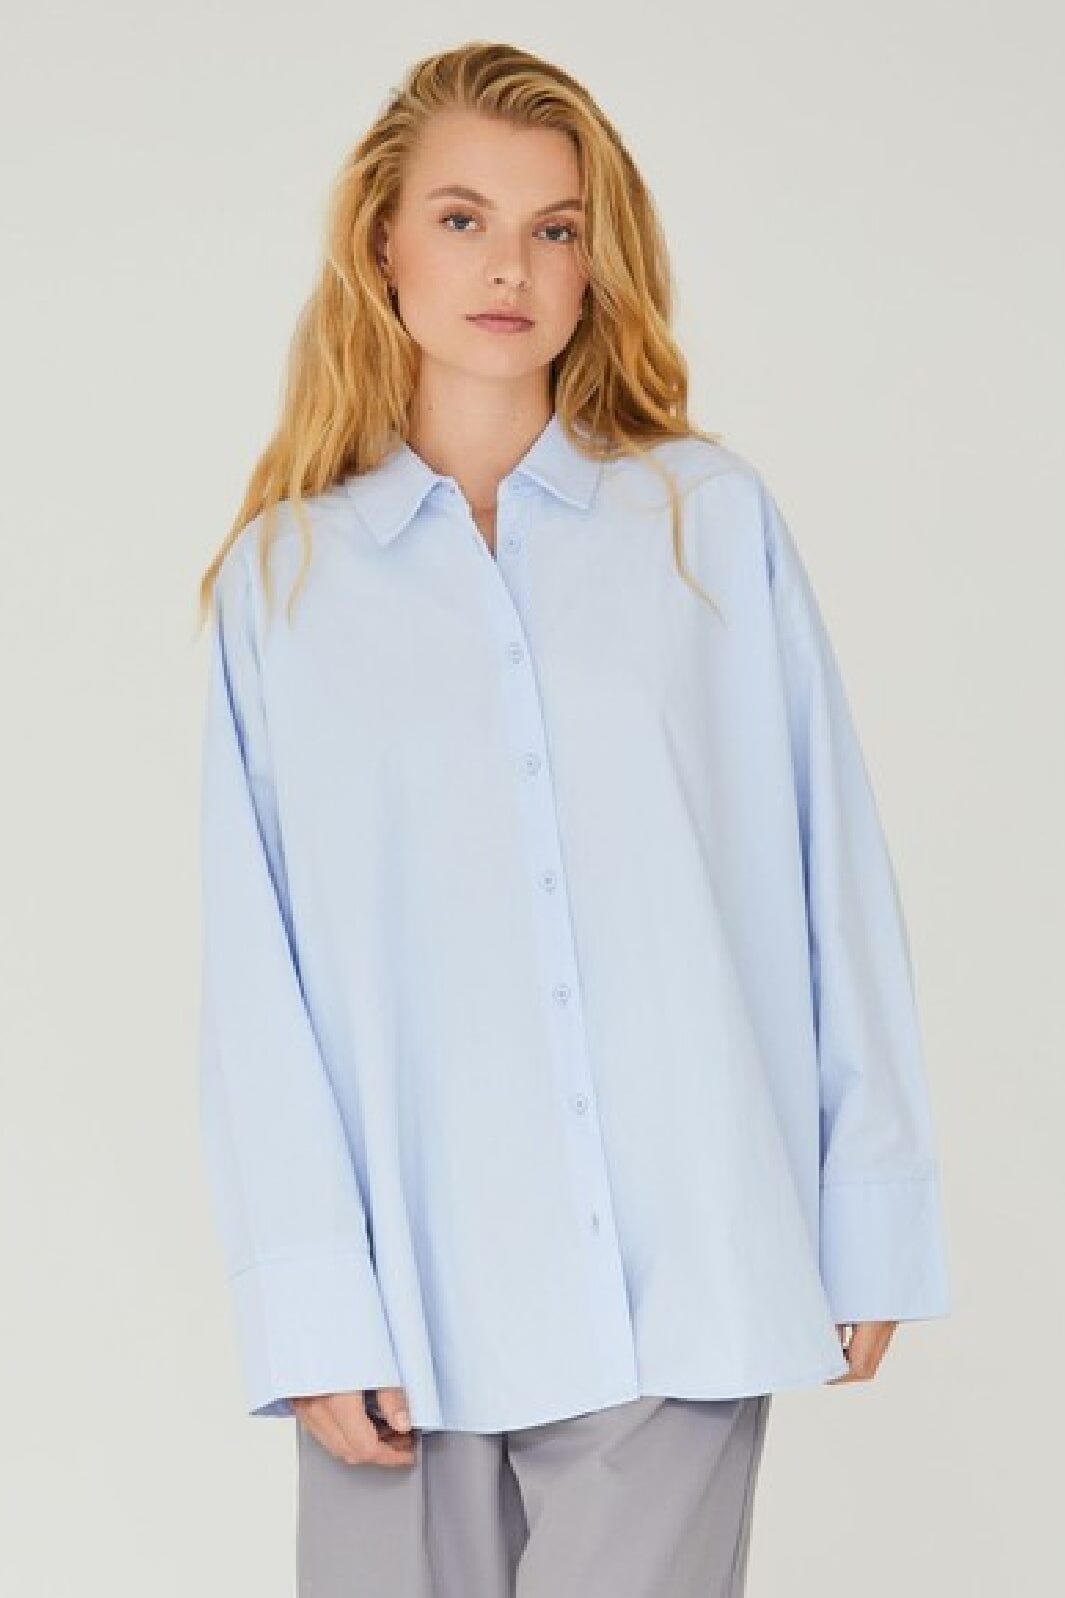 A-View - Magnolia Shirt - 282 Light Blue Skjorter 